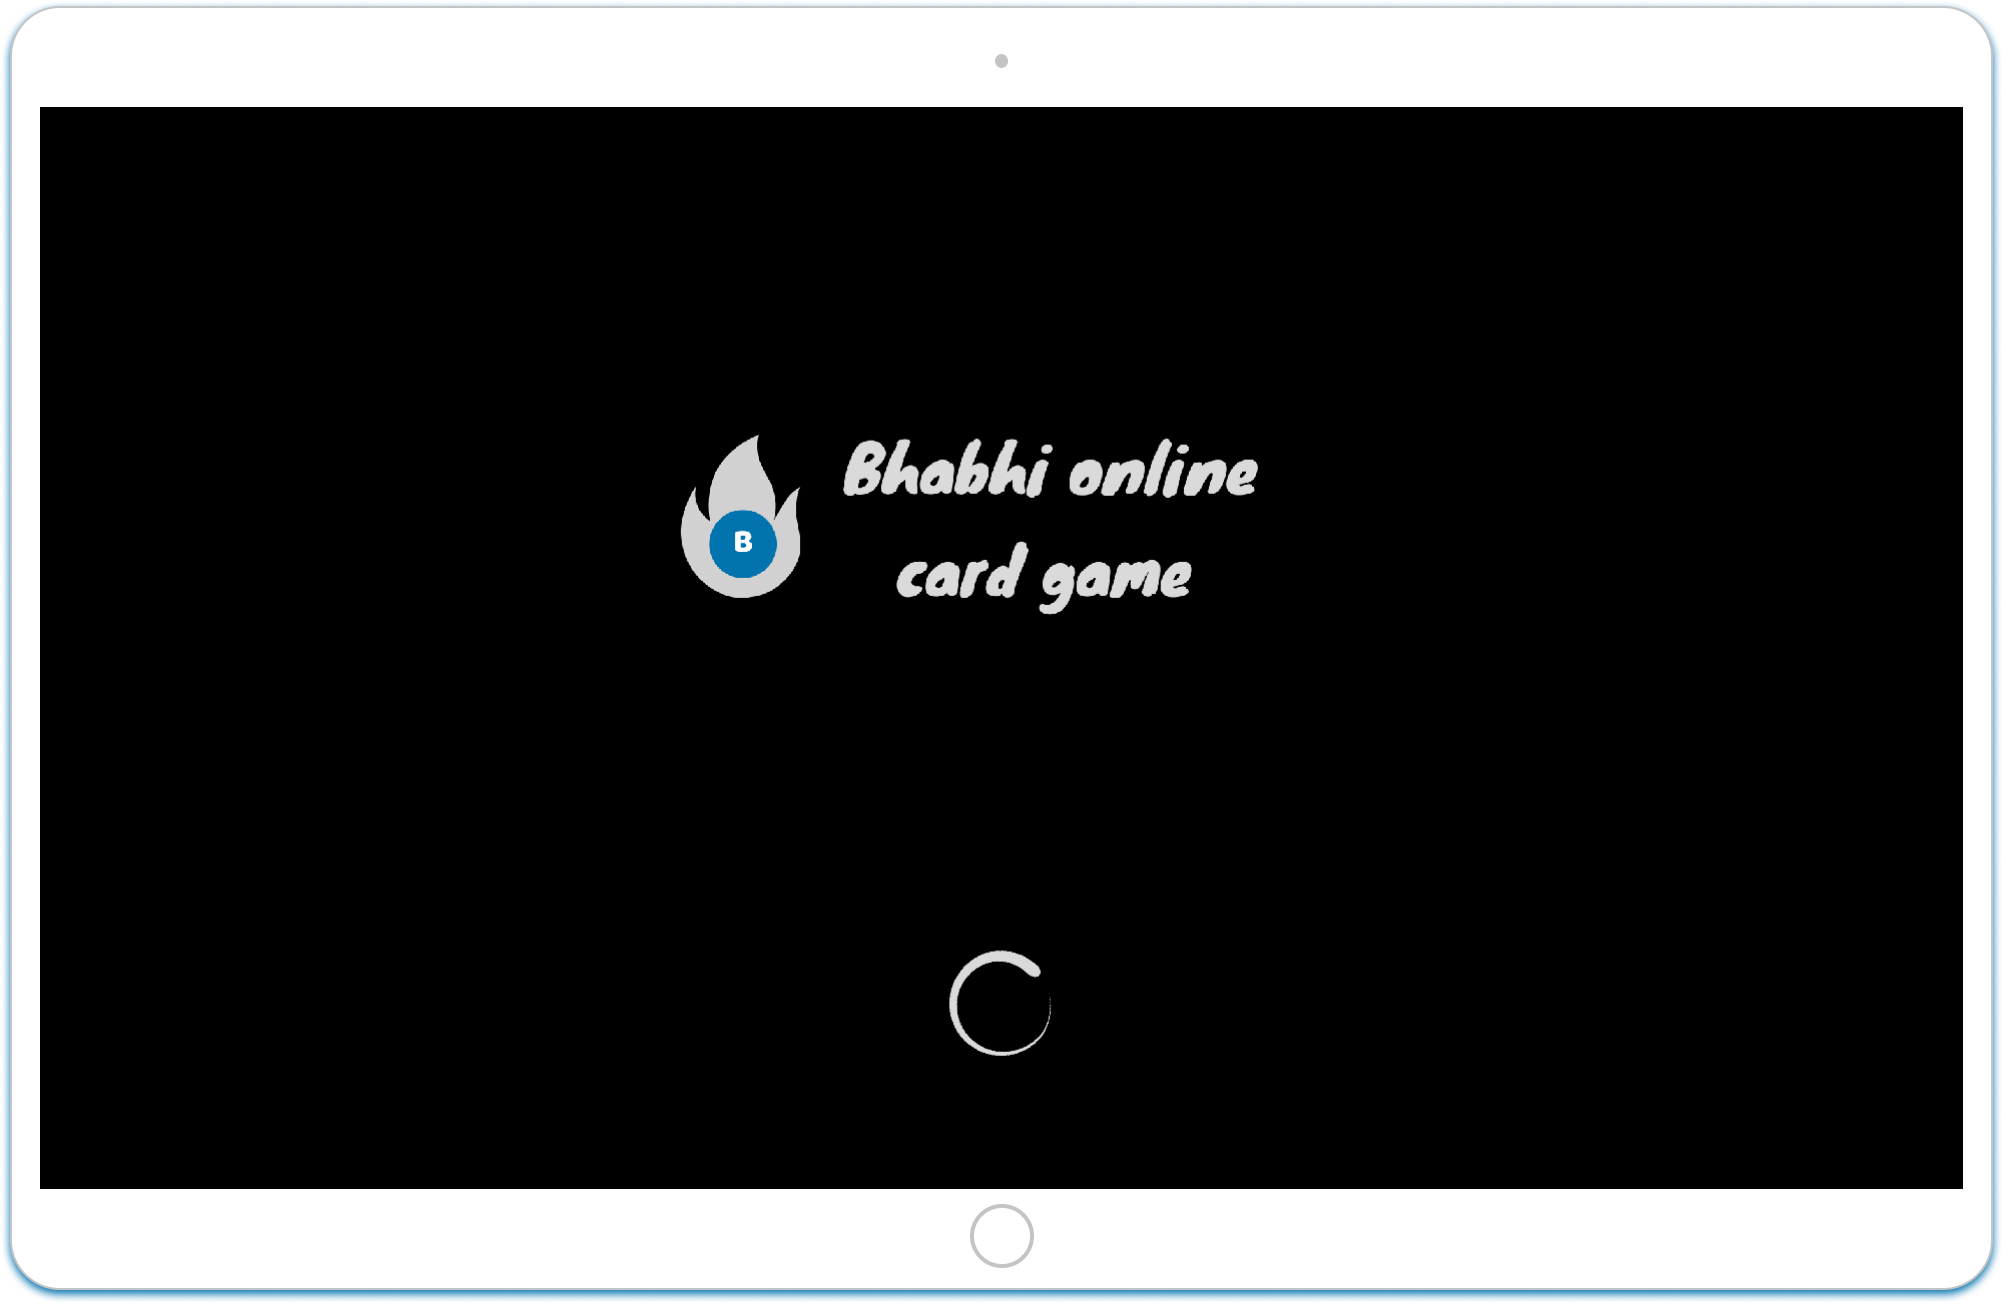 Online card game imag1